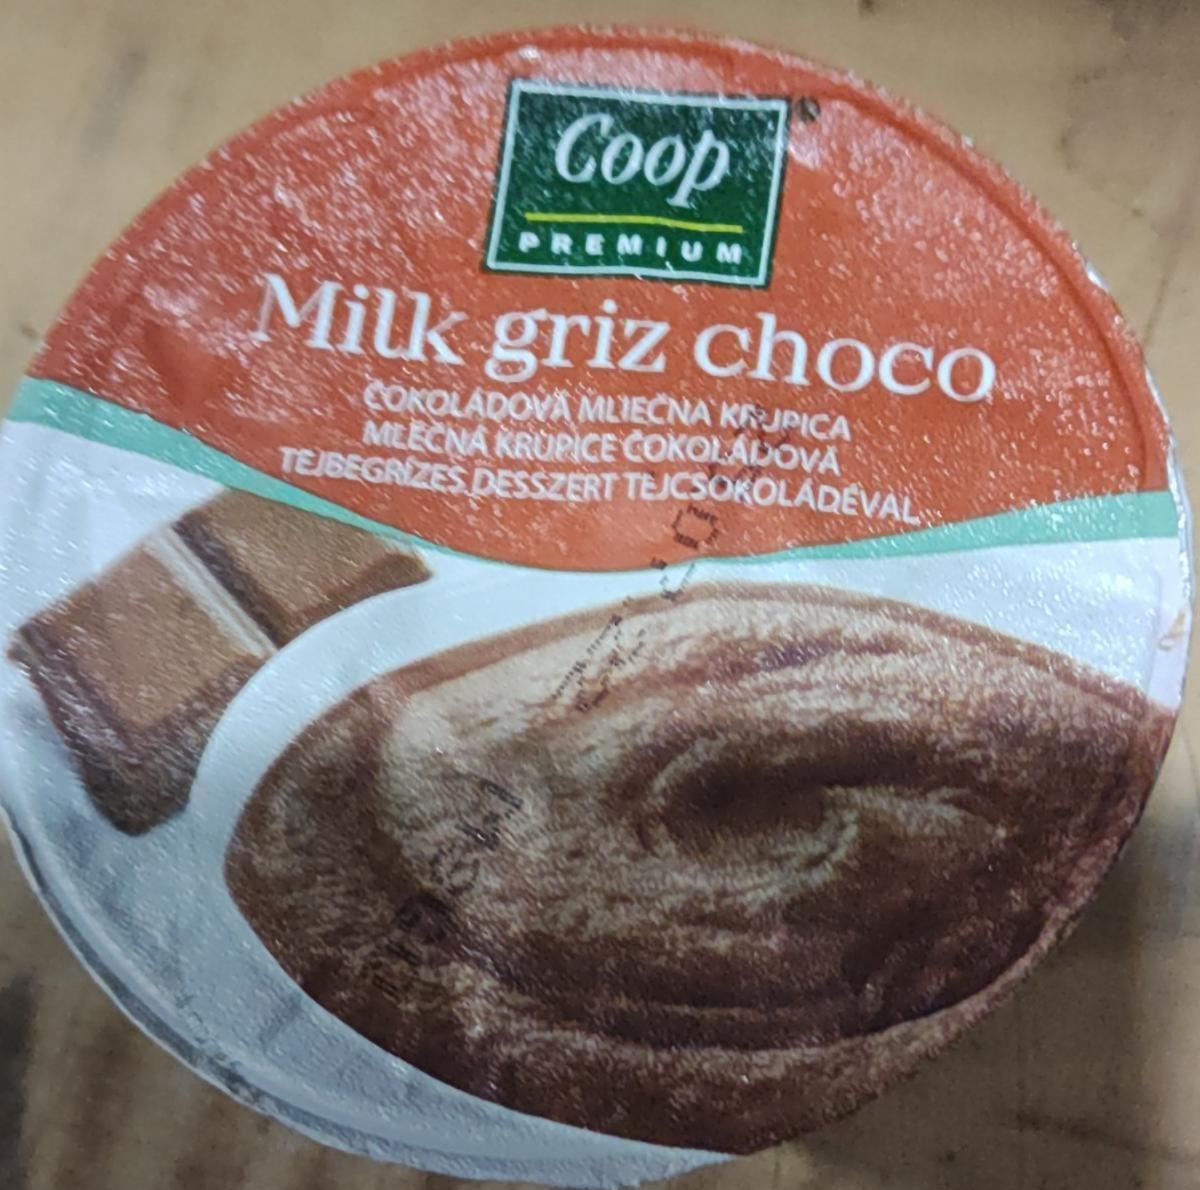 Fotografie - Milk griz choco Coop Premium